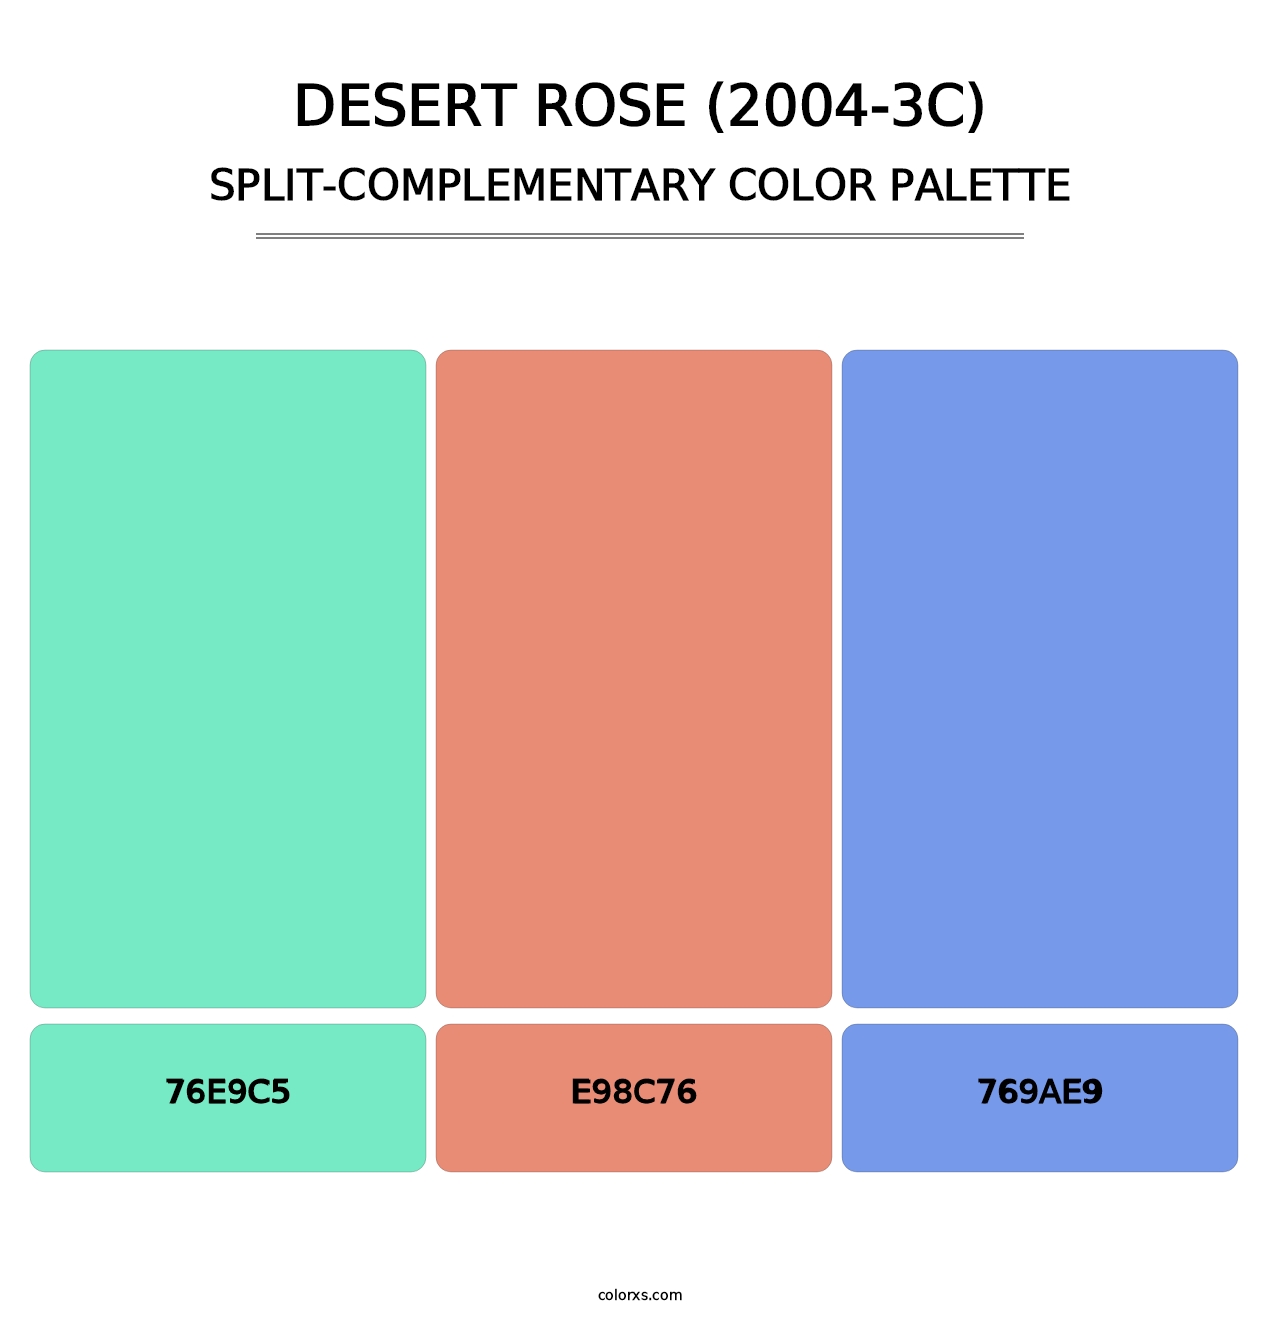 Desert Rose (2004-3C) - Split-Complementary Color Palette